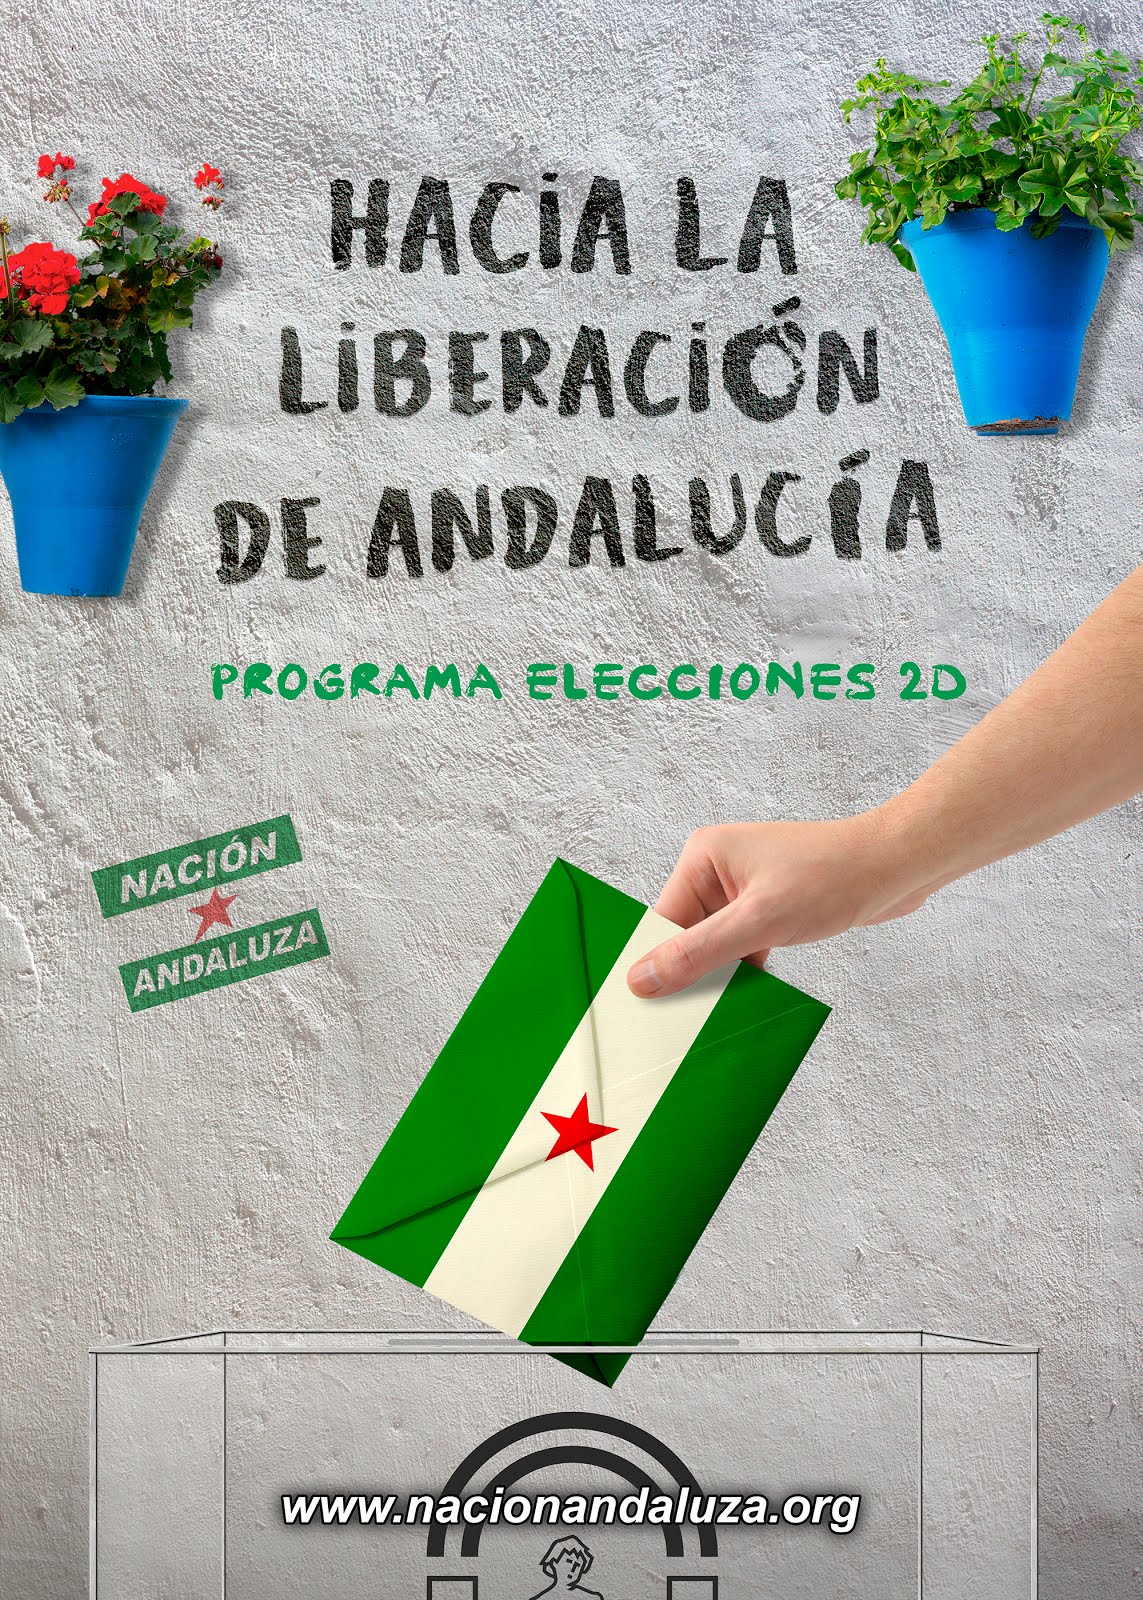 Elecciones 2D: programa de Nación Andaluza